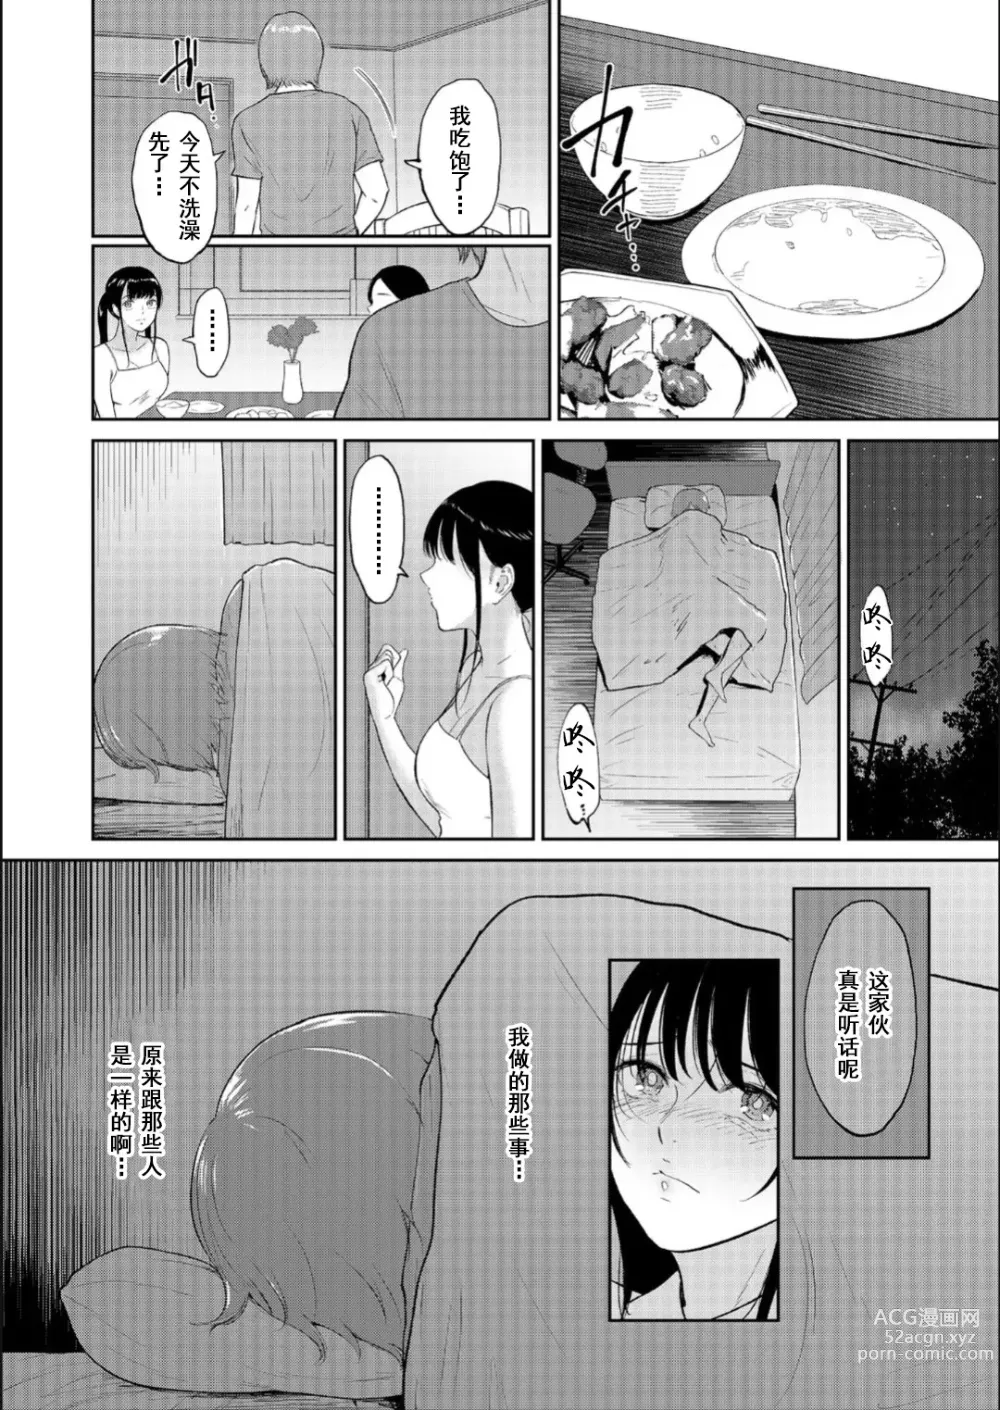 Page 18 of manga Iinarikko 3